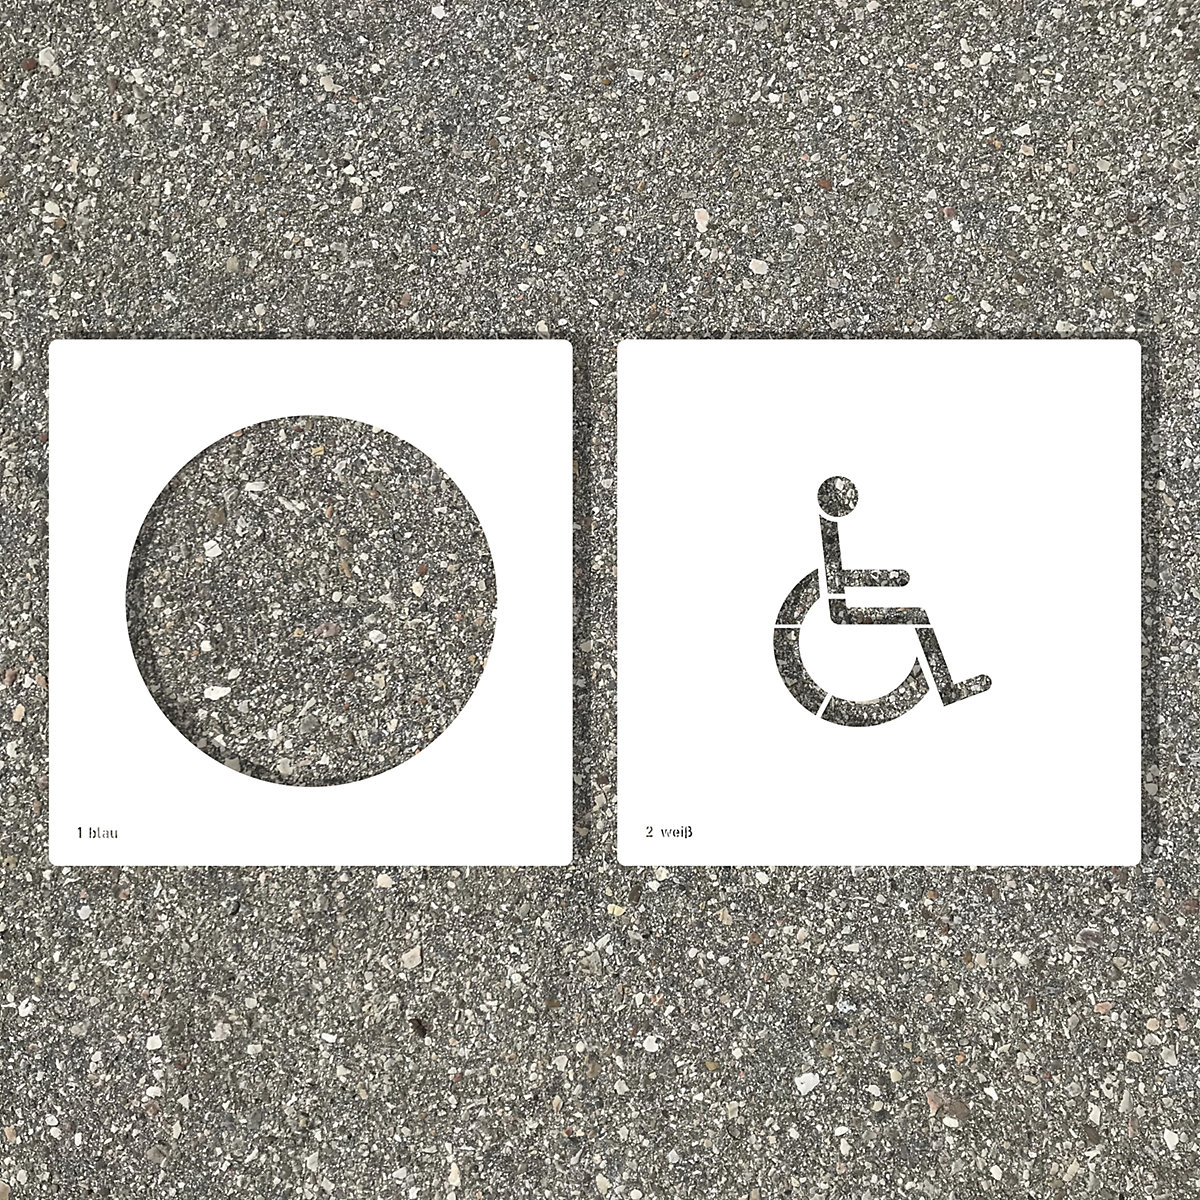 Szablon podłogowy, parking dla osób niepełnosprawnych, tworzywo-1